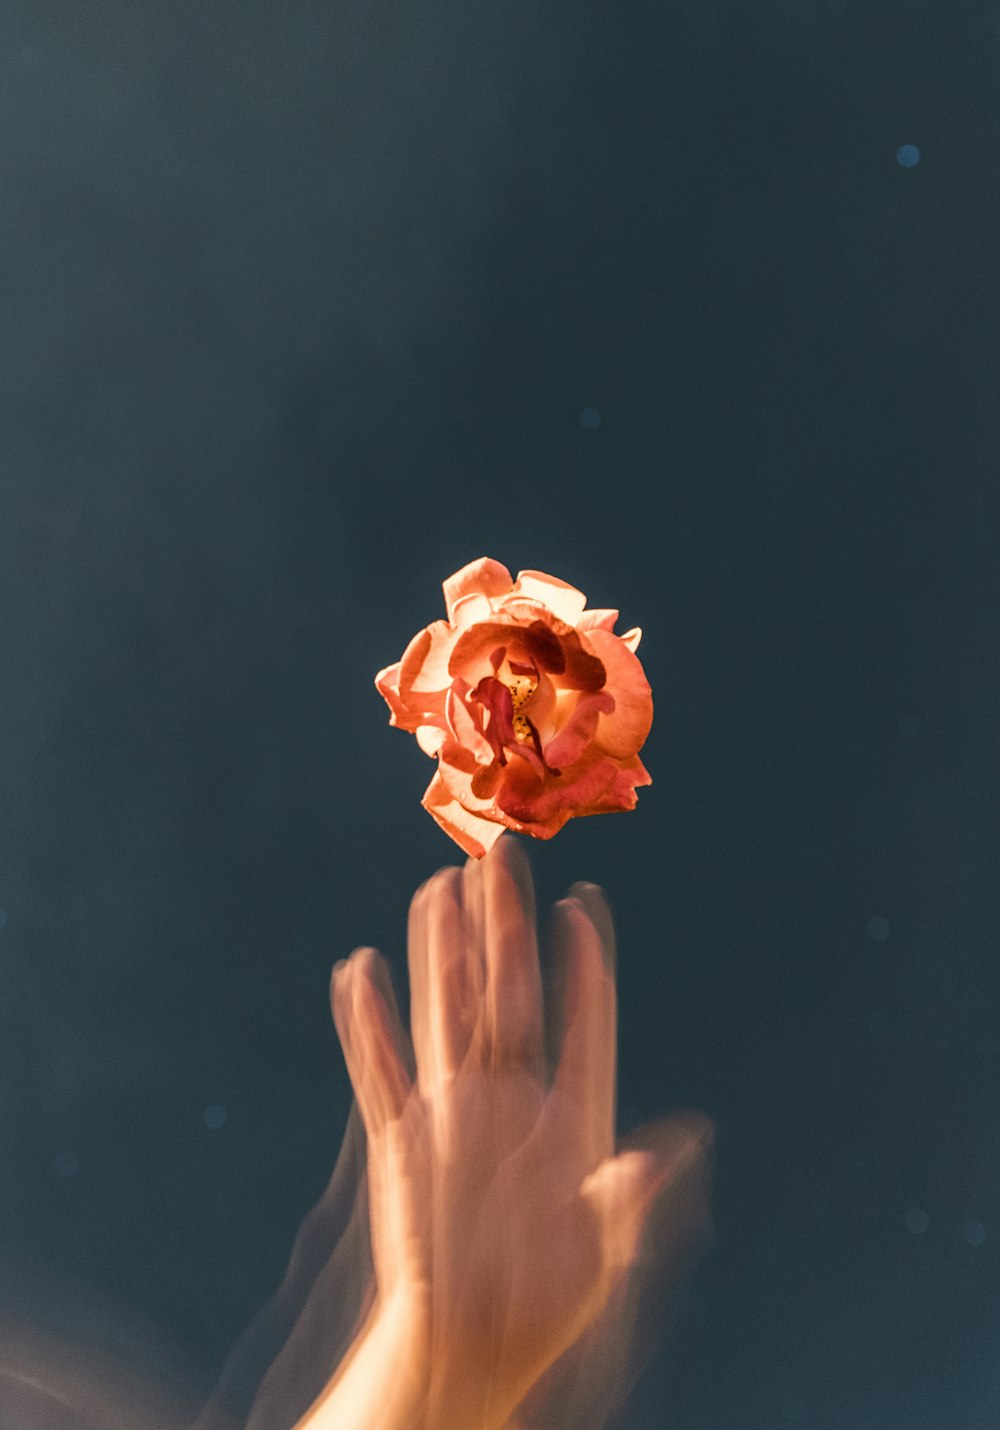 personne lançant une fleur de rose orange